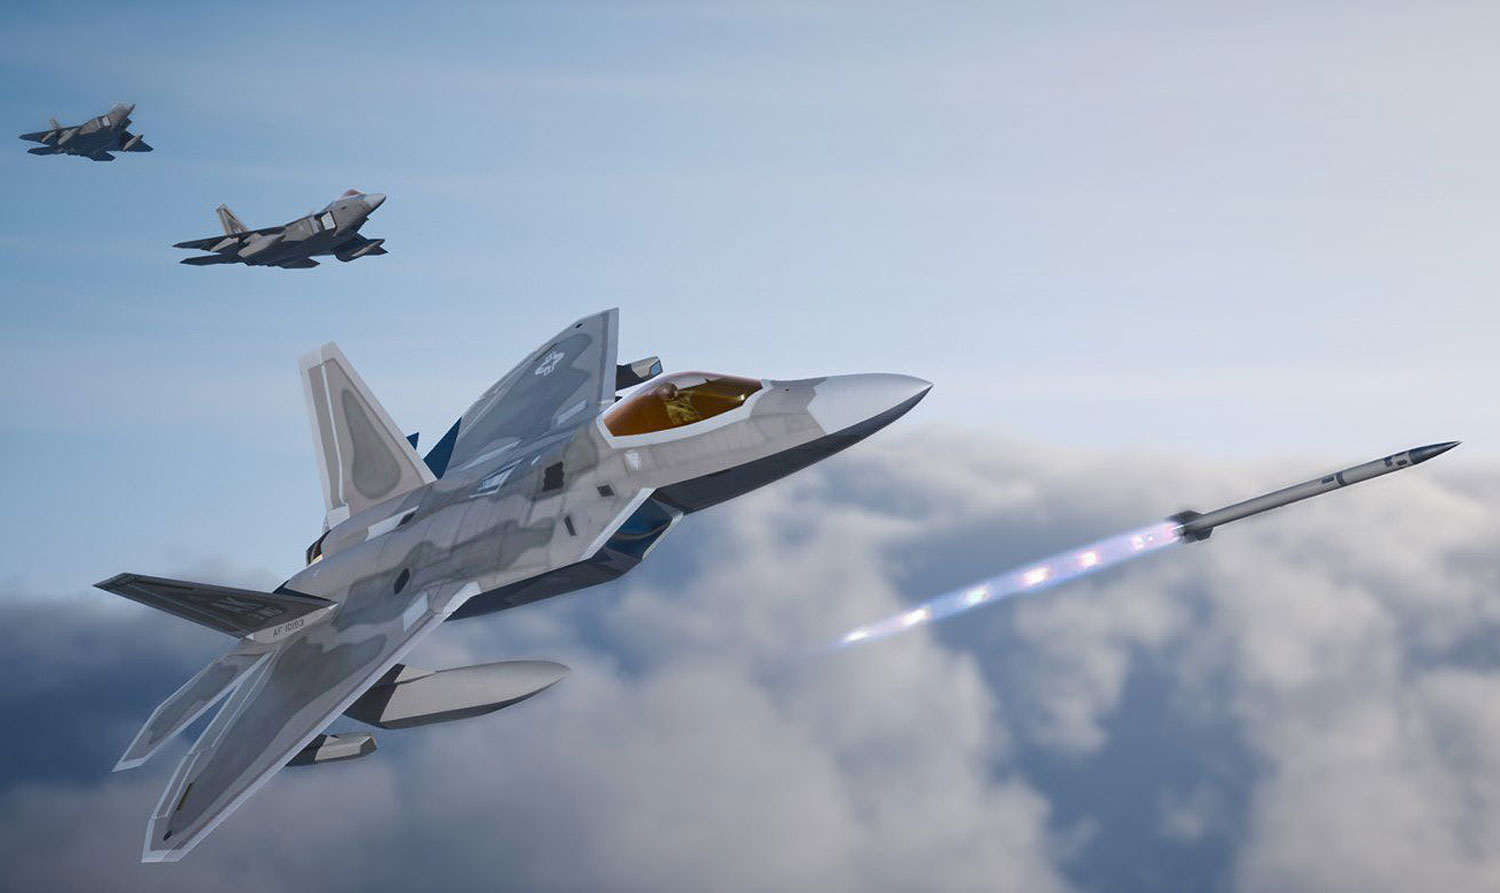 Endlich: Der F-22 Raptor hat zum ersten Mal in seiner Geschichte ein Luftziel zerstört - das Flugzeug erschien 1997